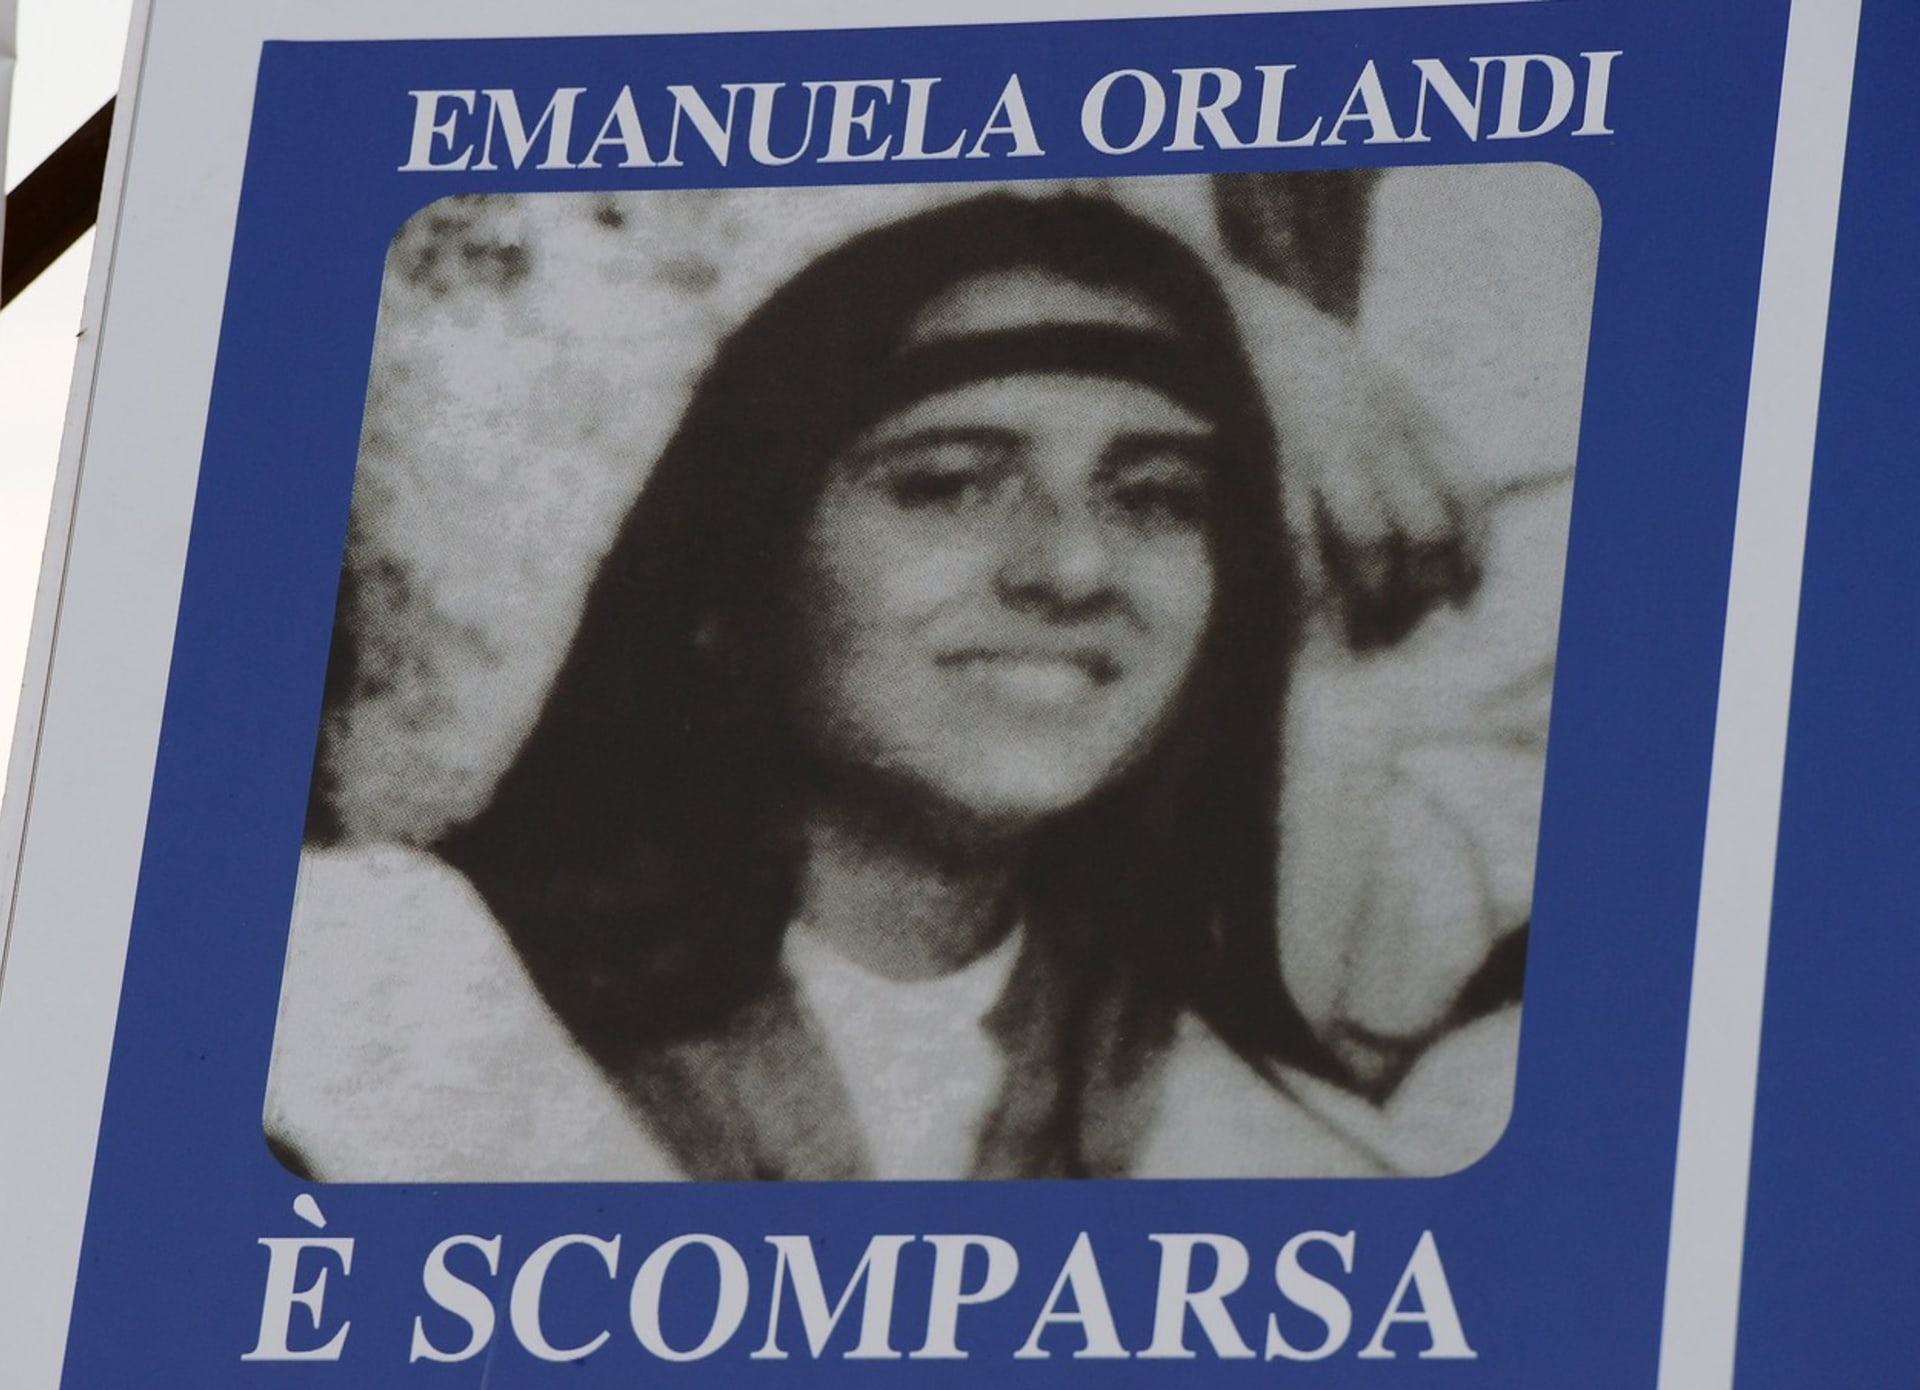 Patnáctiletá Emanuela Orlandiová zmizela před 40 lety.